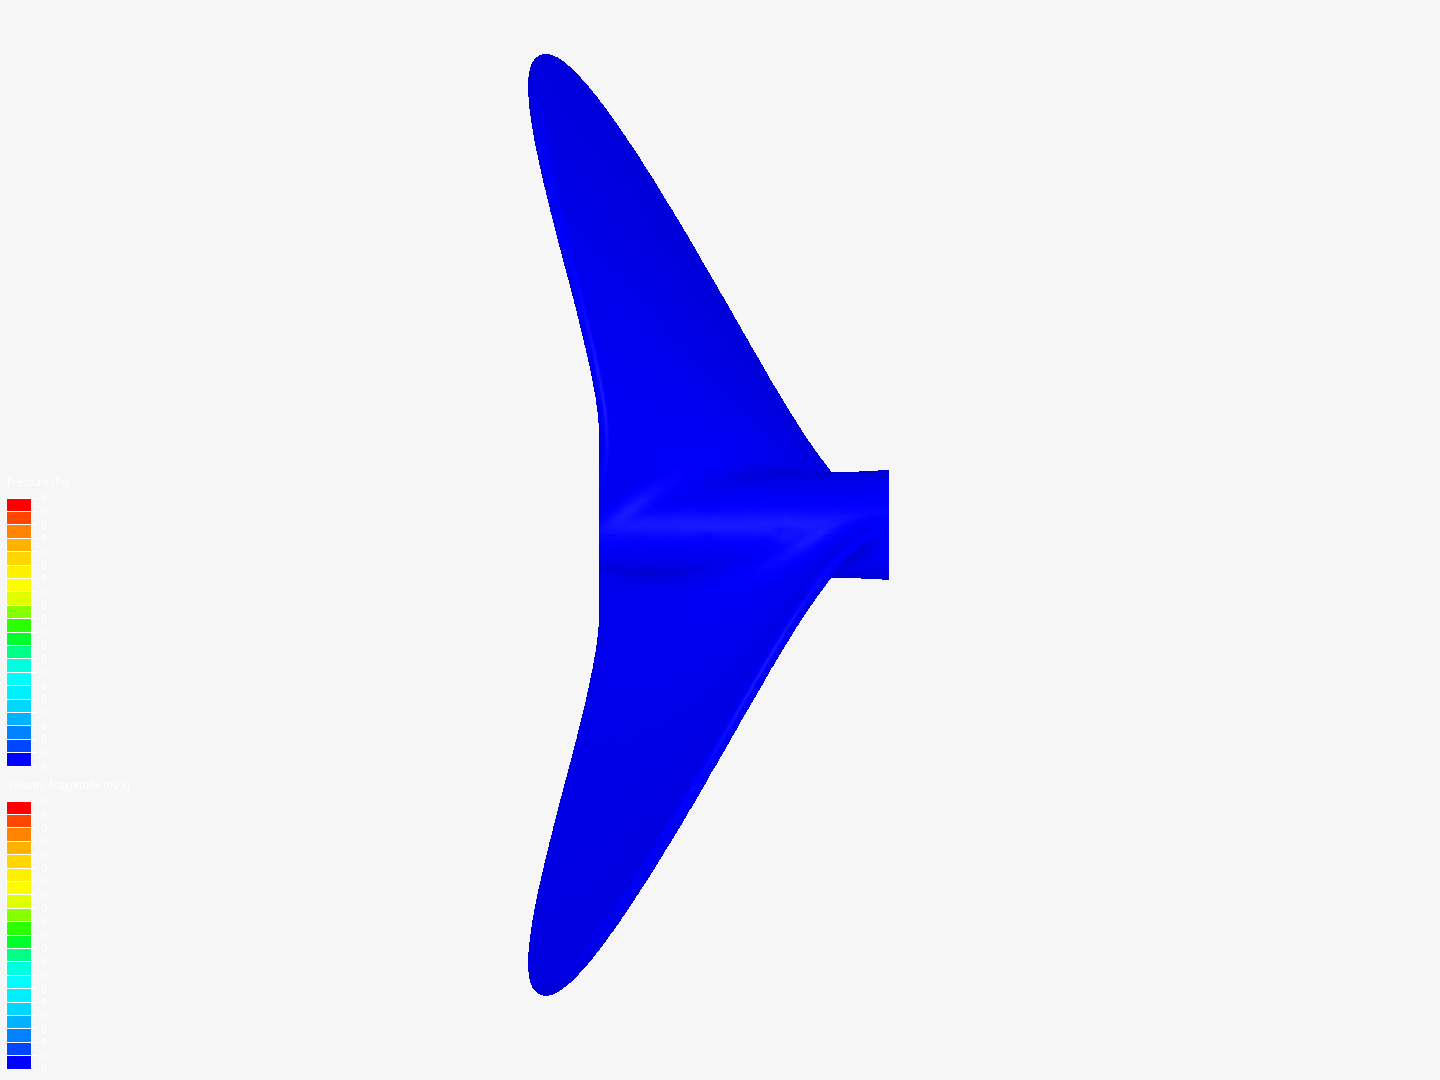 propeller test image